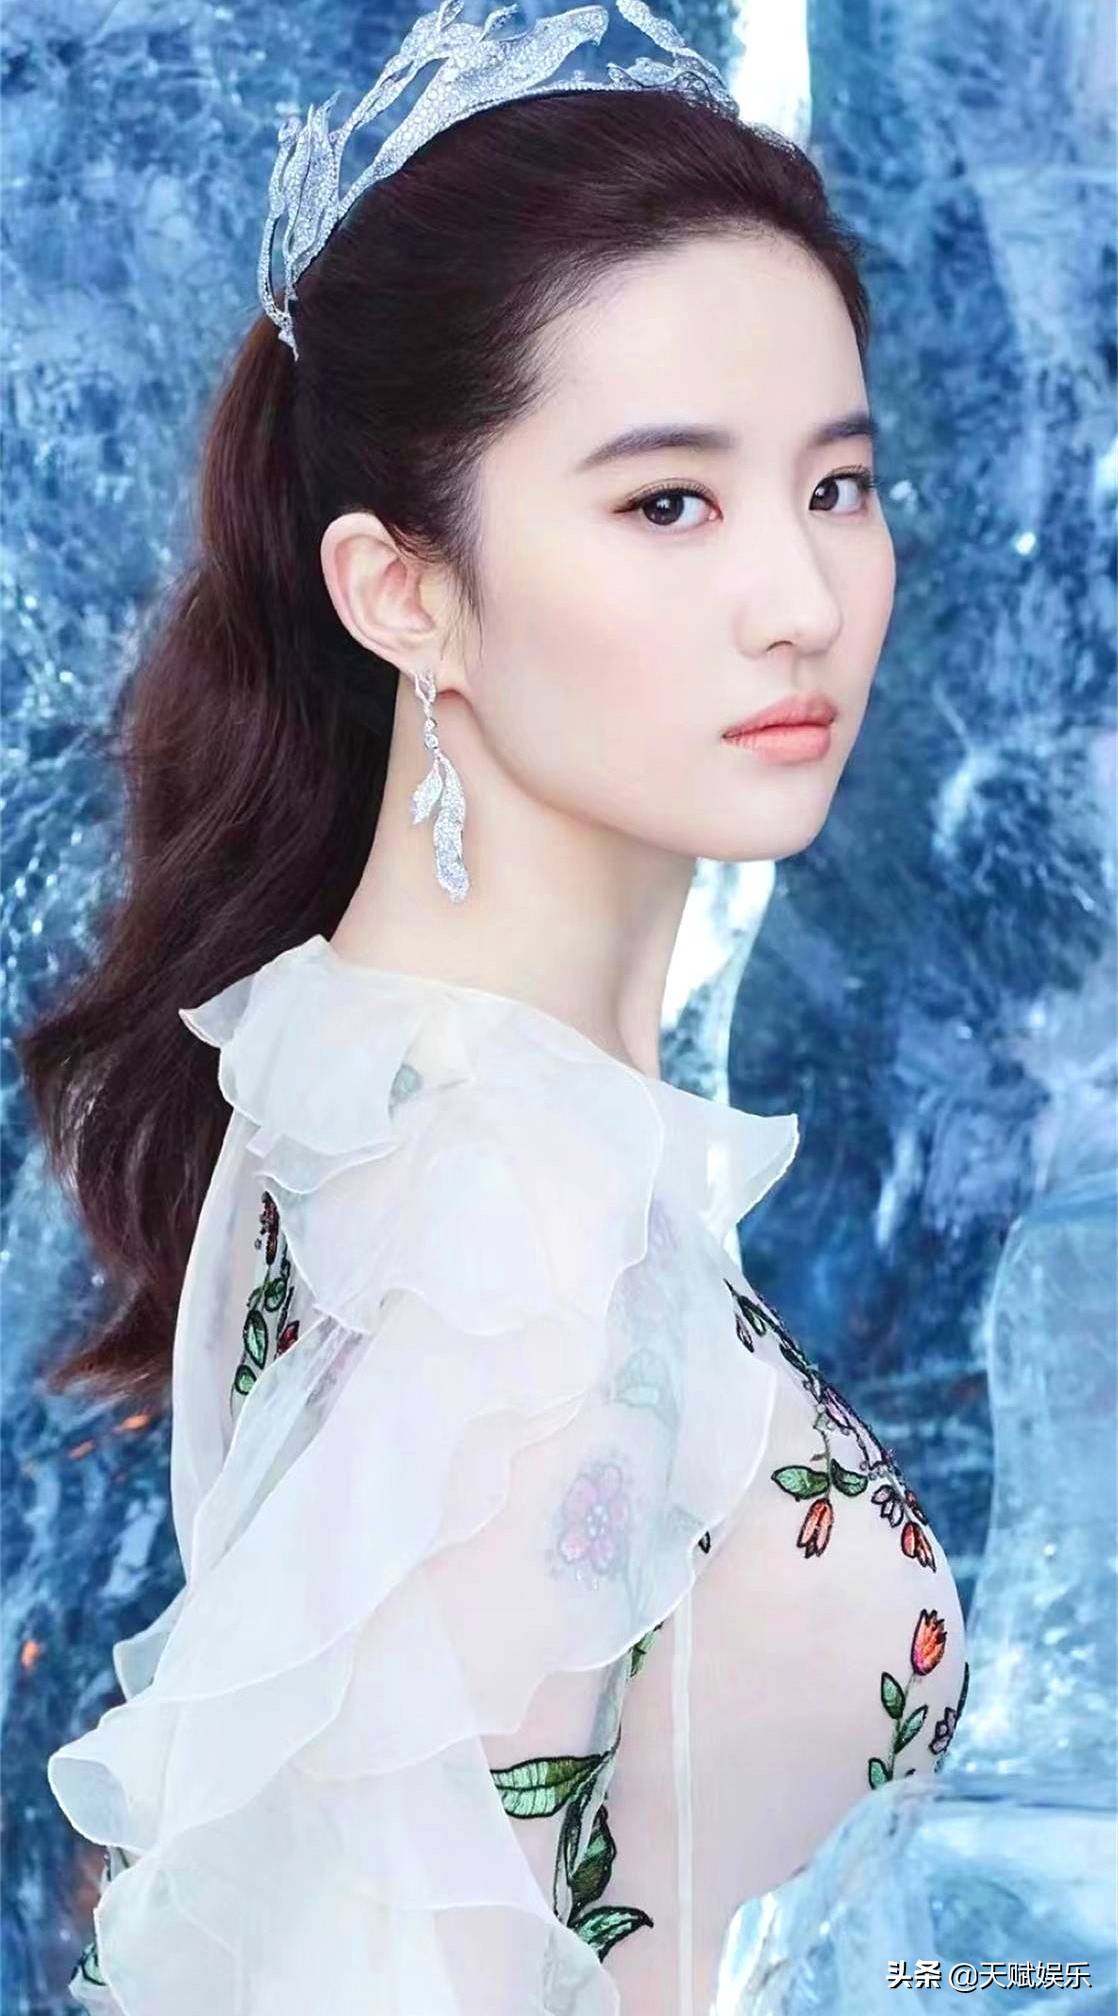 原创娱乐圈影视女演员歌手刘亦菲写真相片四